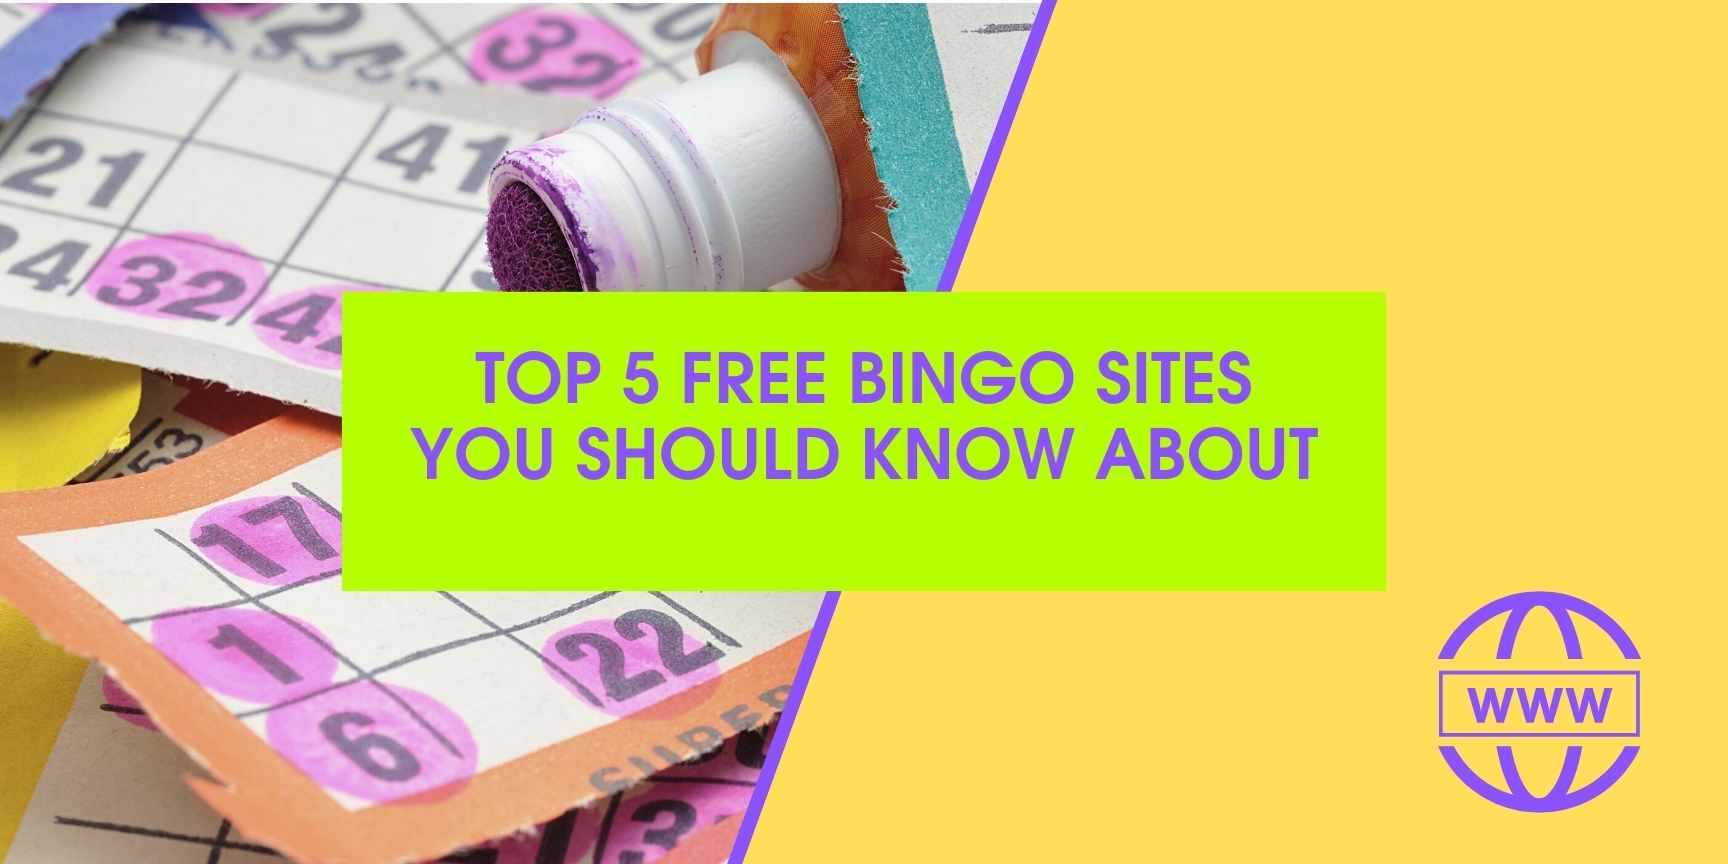 Top 5 Free Bingo Sites